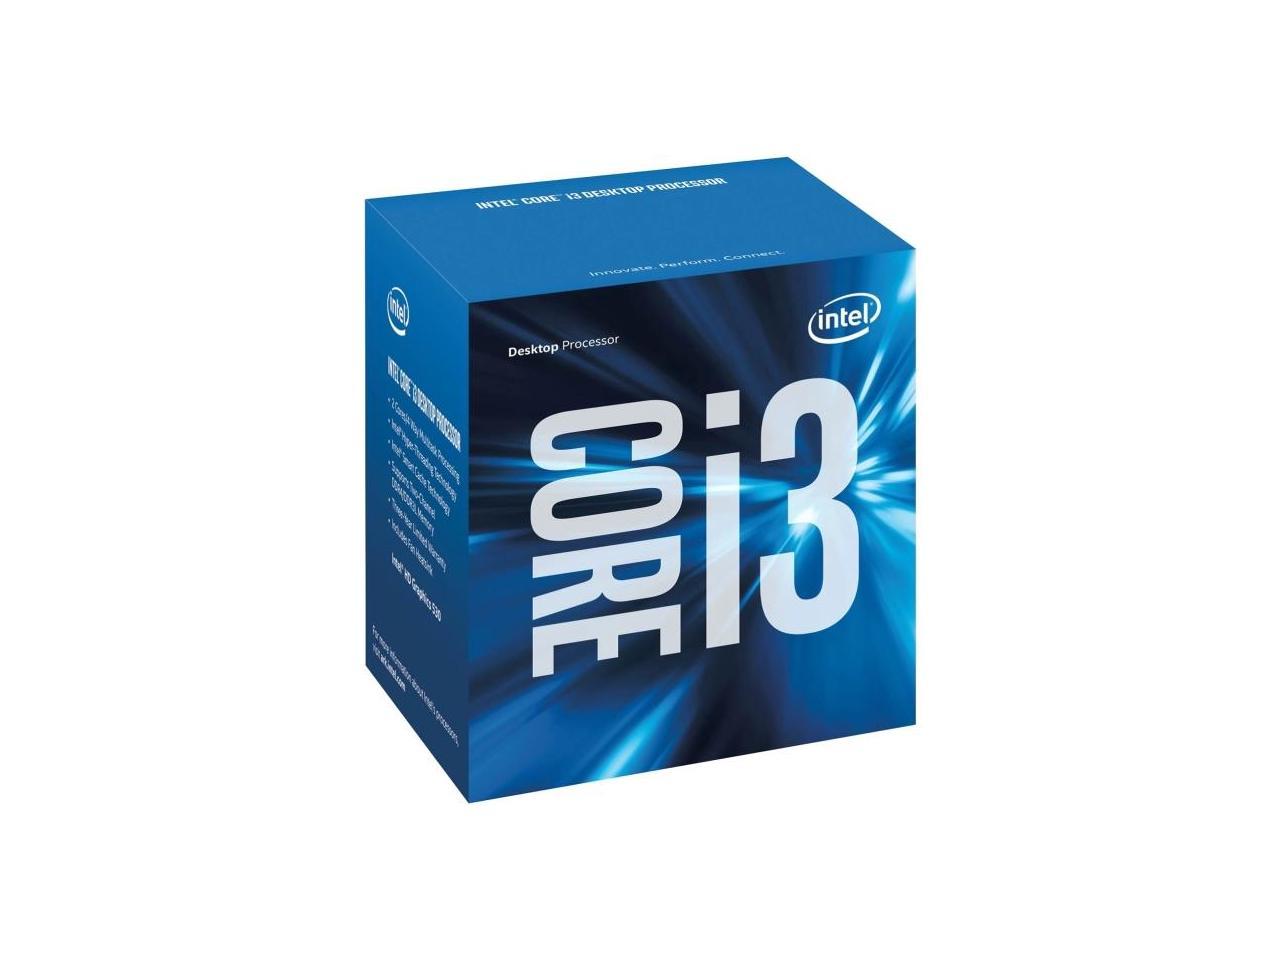 Core i3 7300T Processor